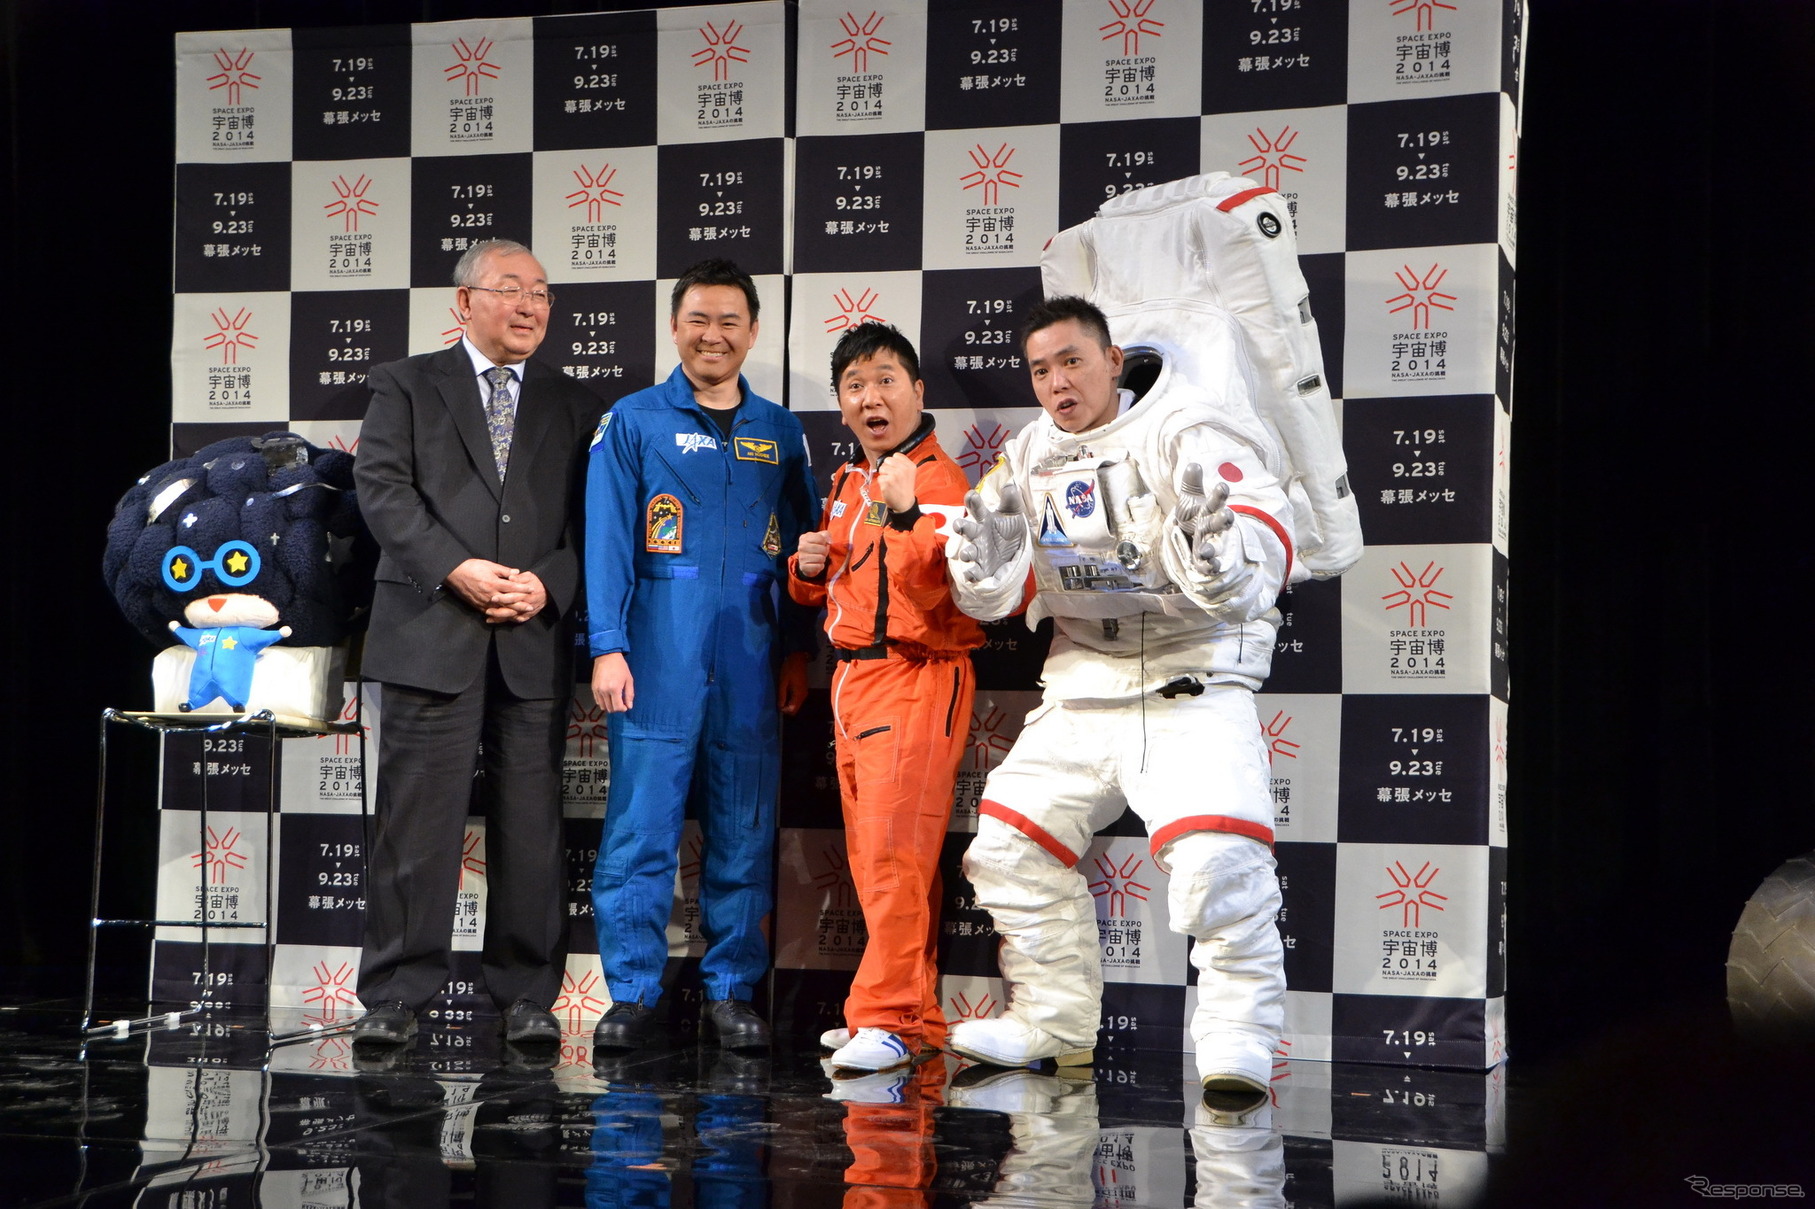 左から的川泰宣JAXA名誉教授、星出彰彦宇宙飛行士、宇宙博公式サポーターの爆笑問題・田中裕二、太田光。左端に公式キャラクター「キュリオくん」も登場。